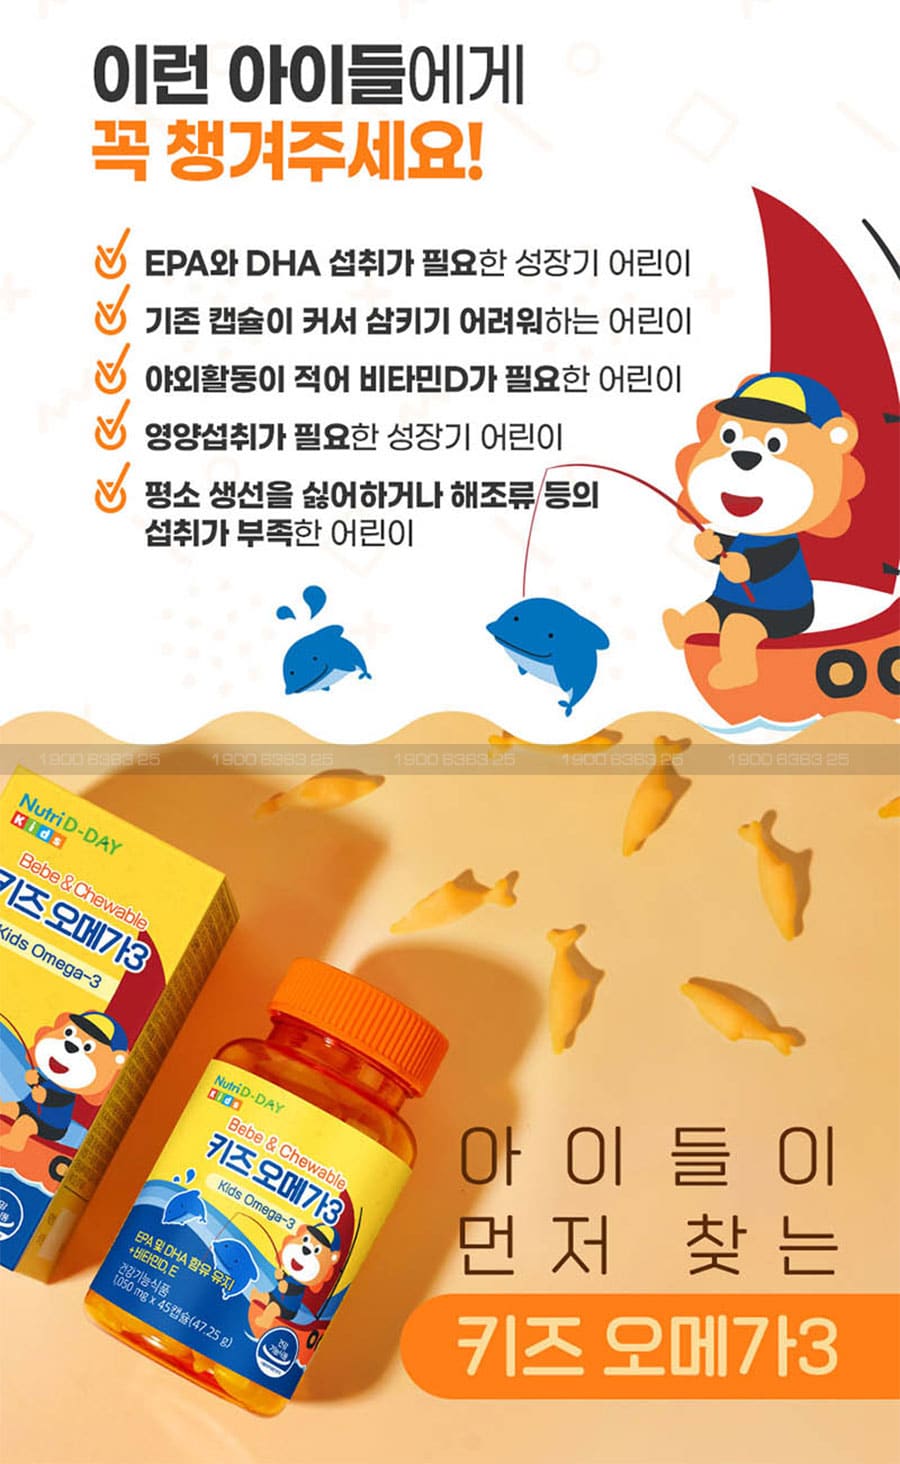 Dầu Cá Omega 3 Nutri D-Day Bebe & Chewable Kids Omega 3 - Dạng Kẹo Dẻo Chuẩn nội địa Hàn Quốc